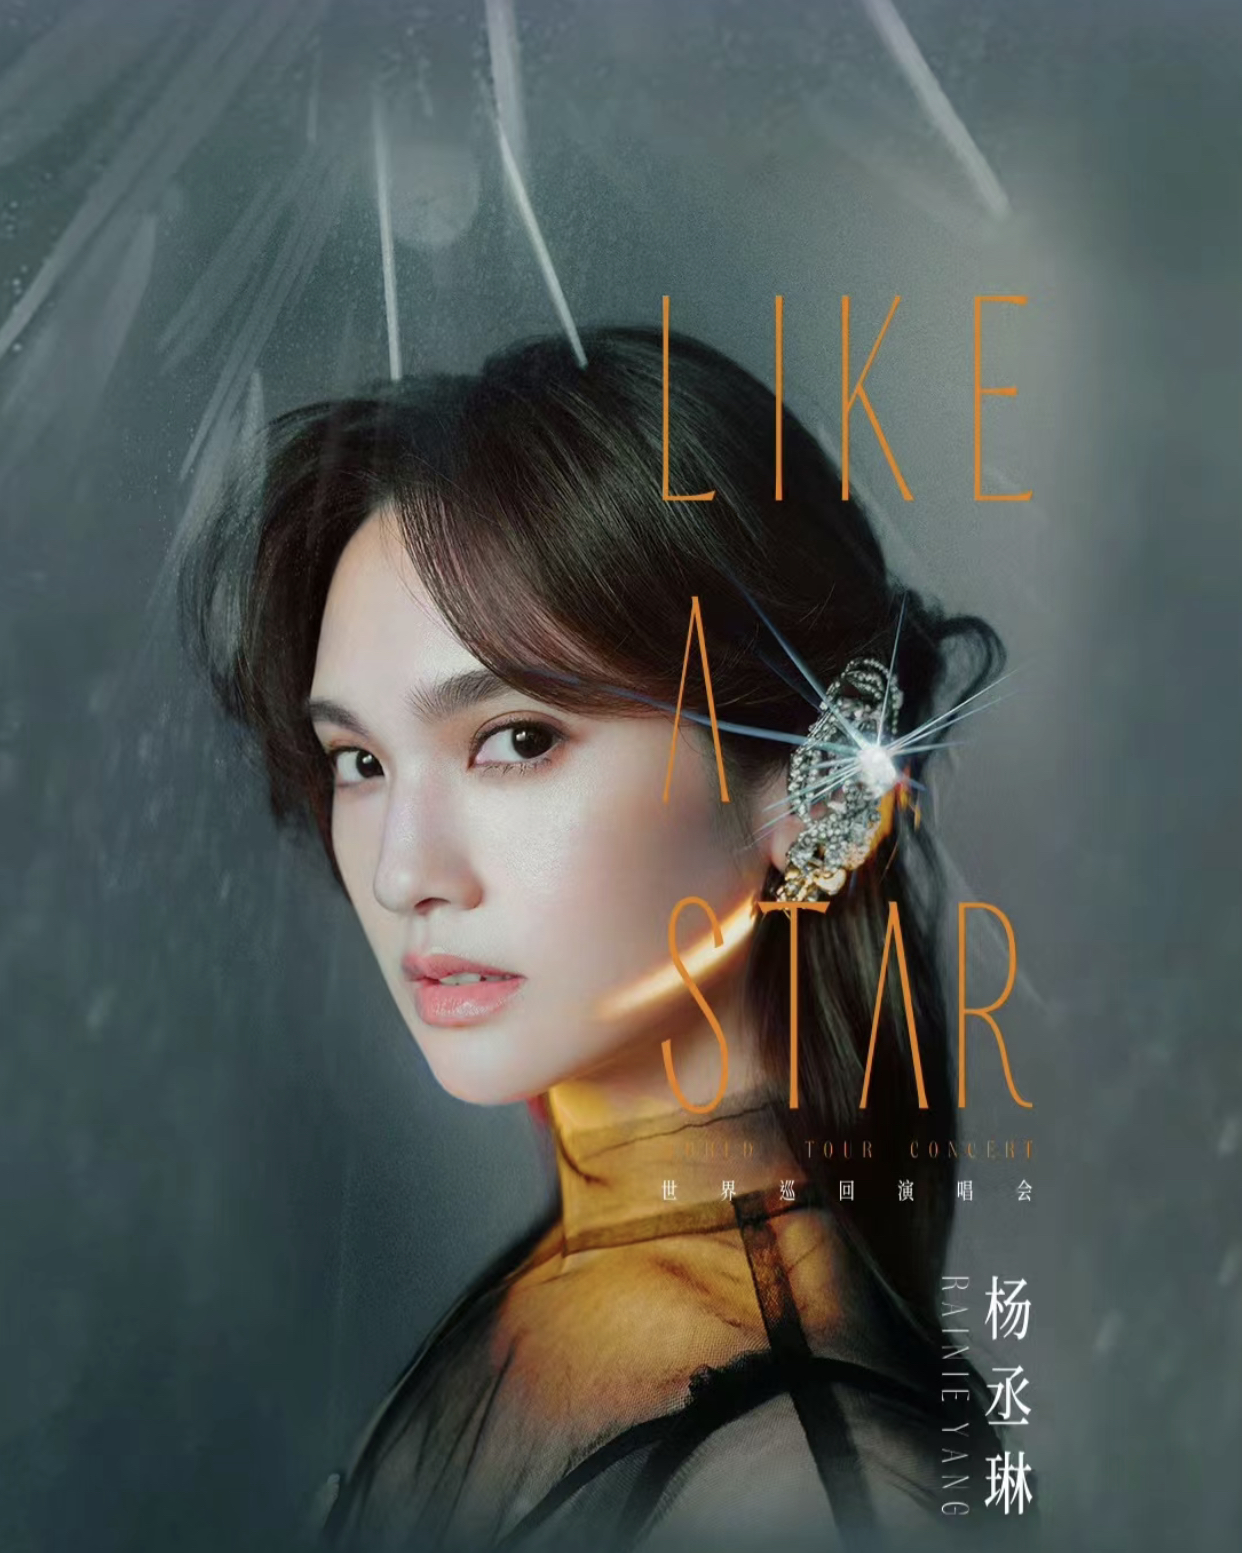 [北京]杨丞琳“LIKE A STAR”巡回演唱会-北京站